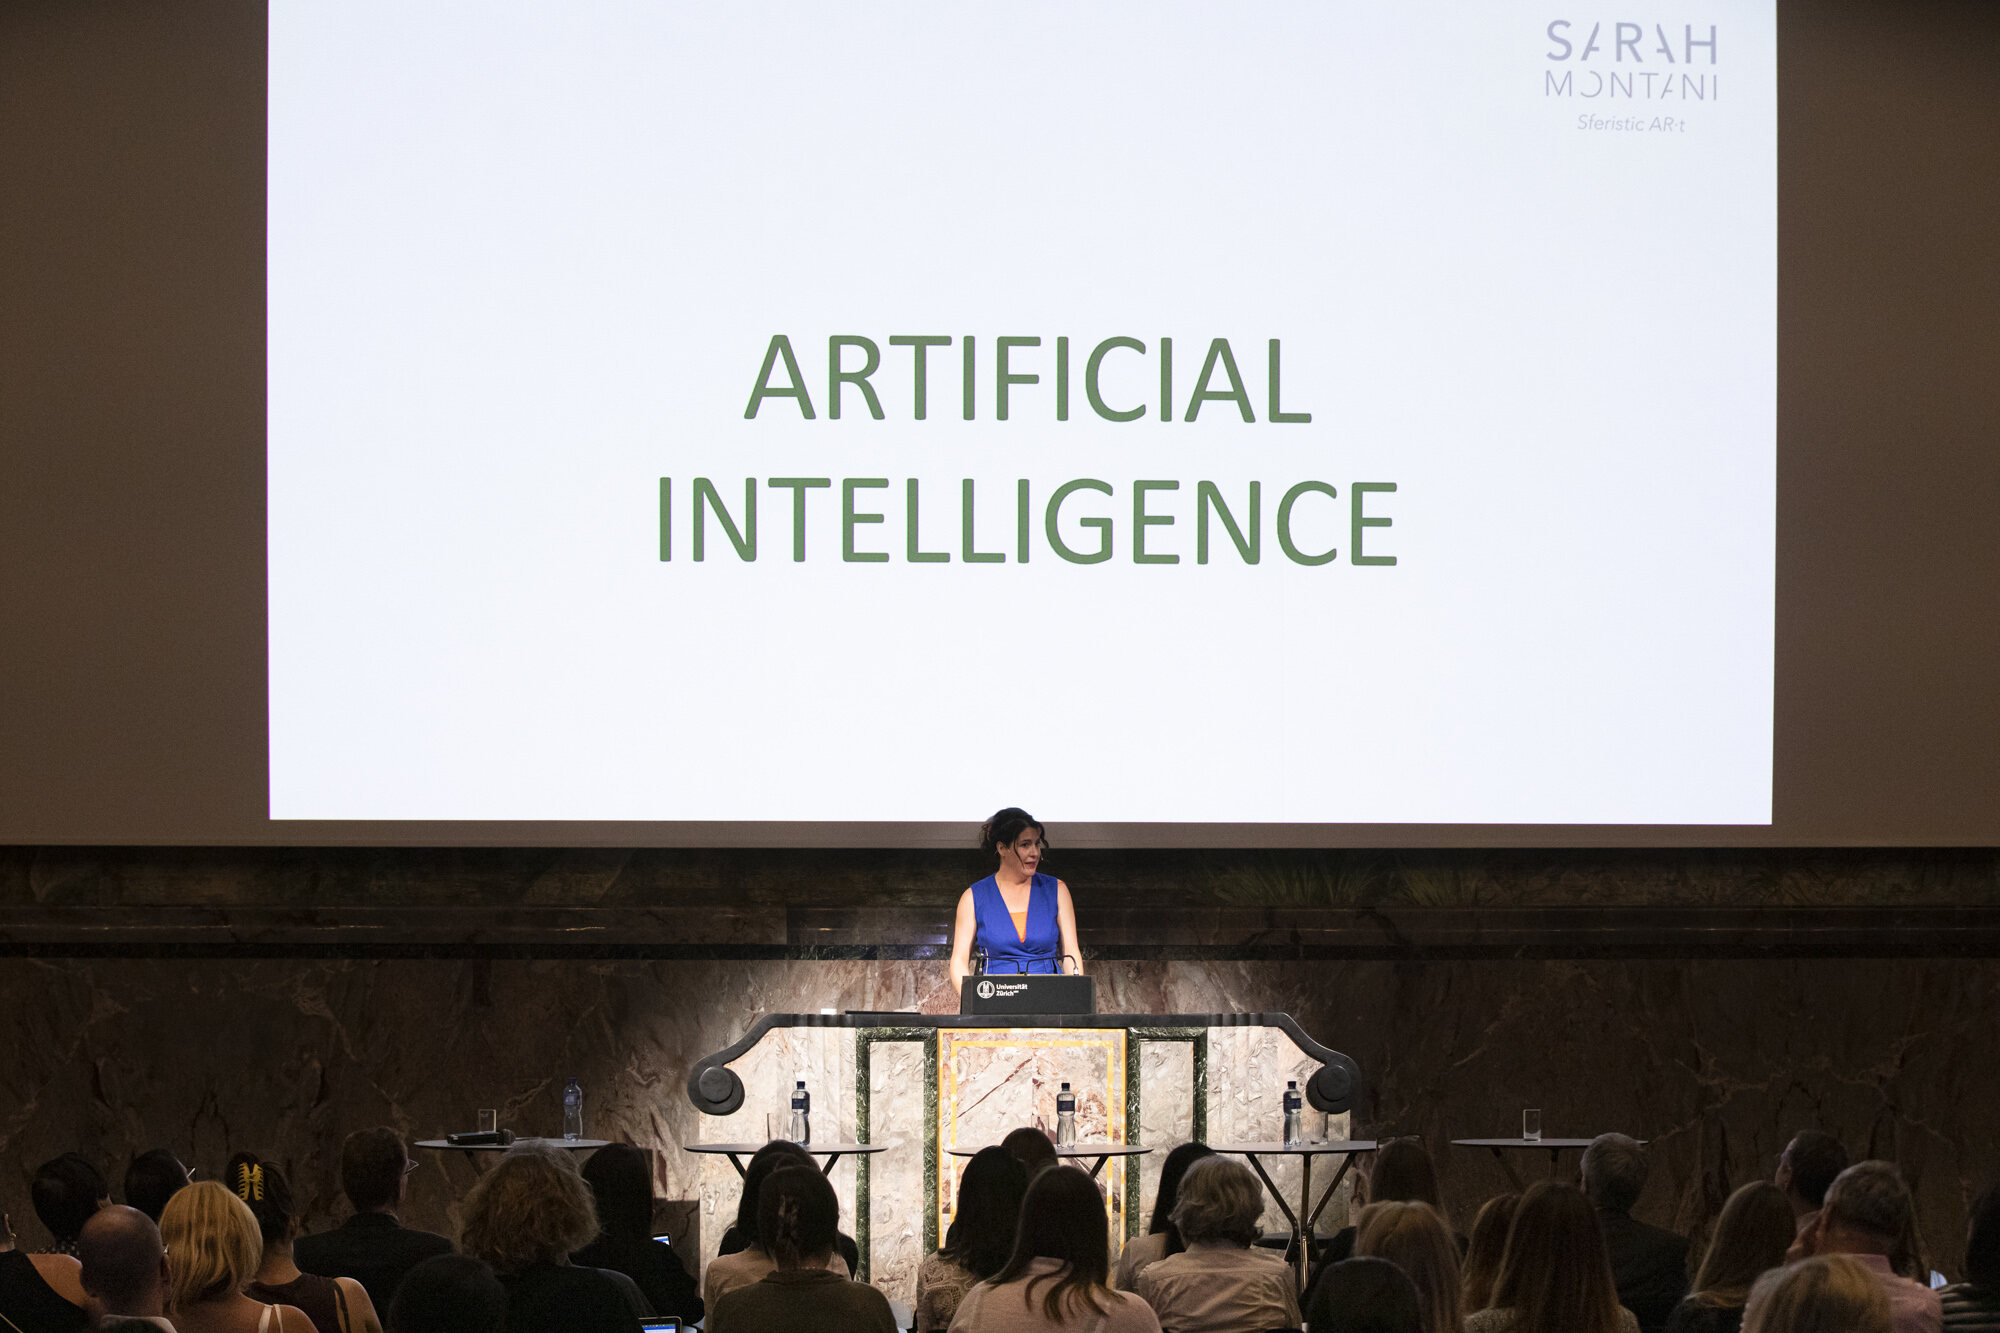 Realtà aumentata: la conferenza su arte e AR all'Università di Zurigo con la parola a Sarah Montani